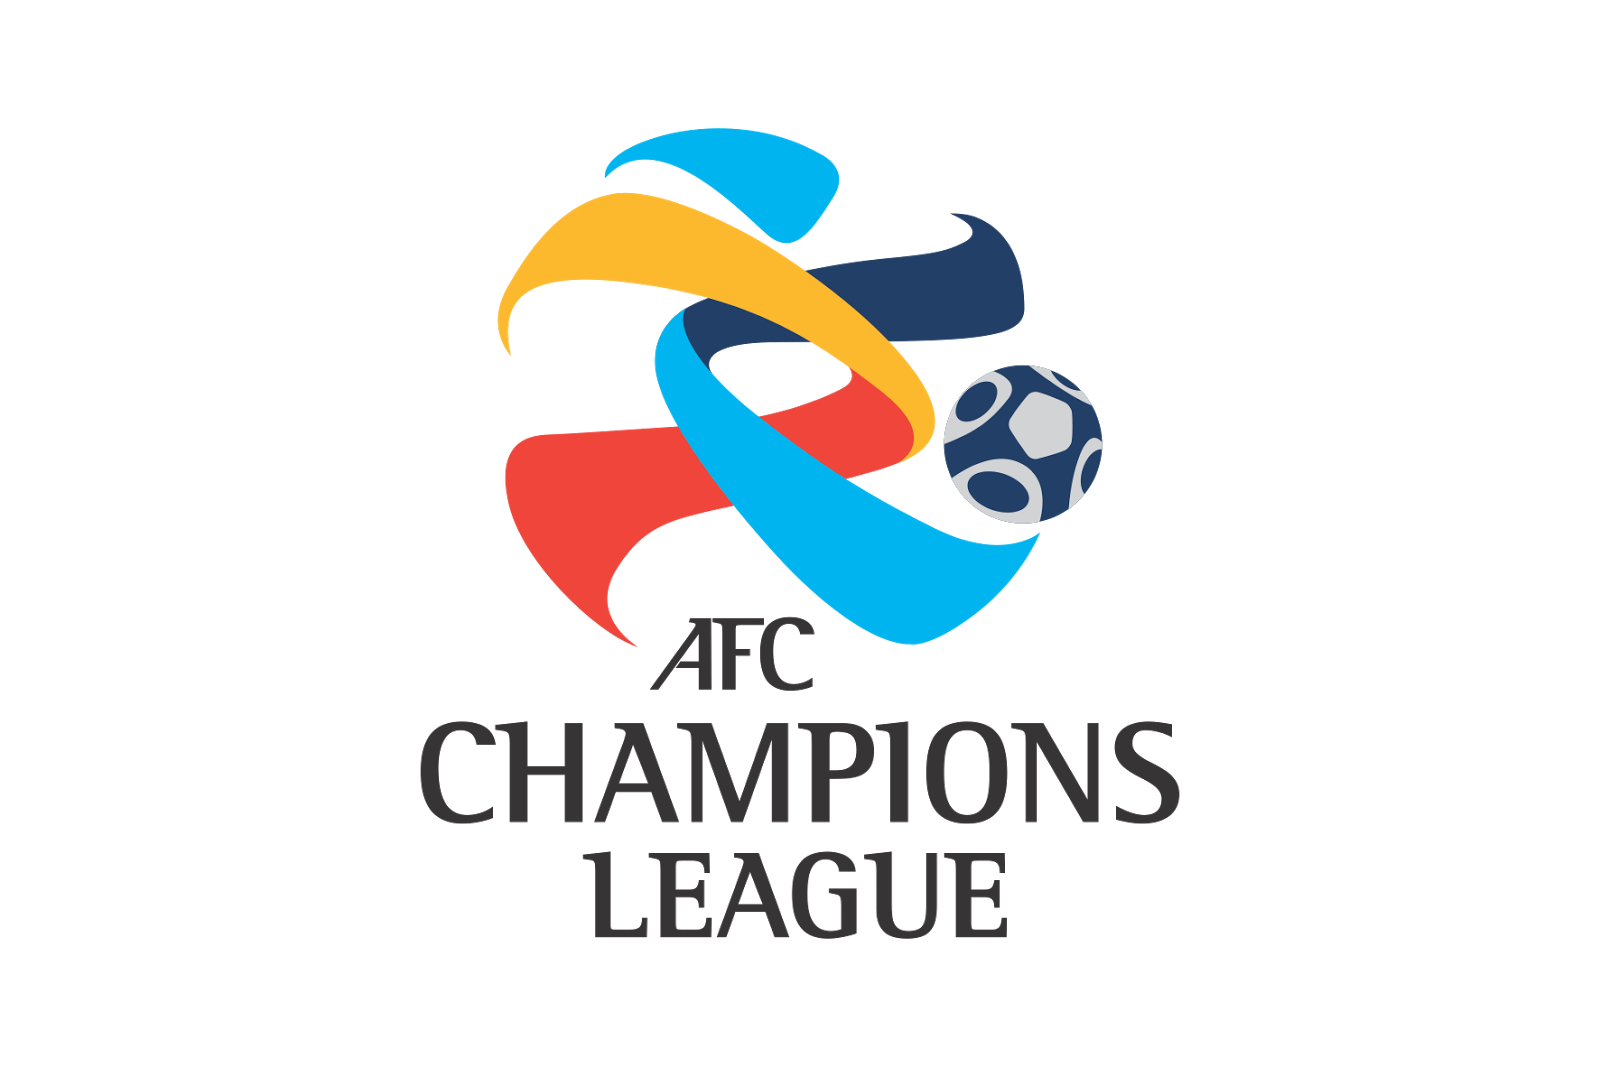 Afc Champions League